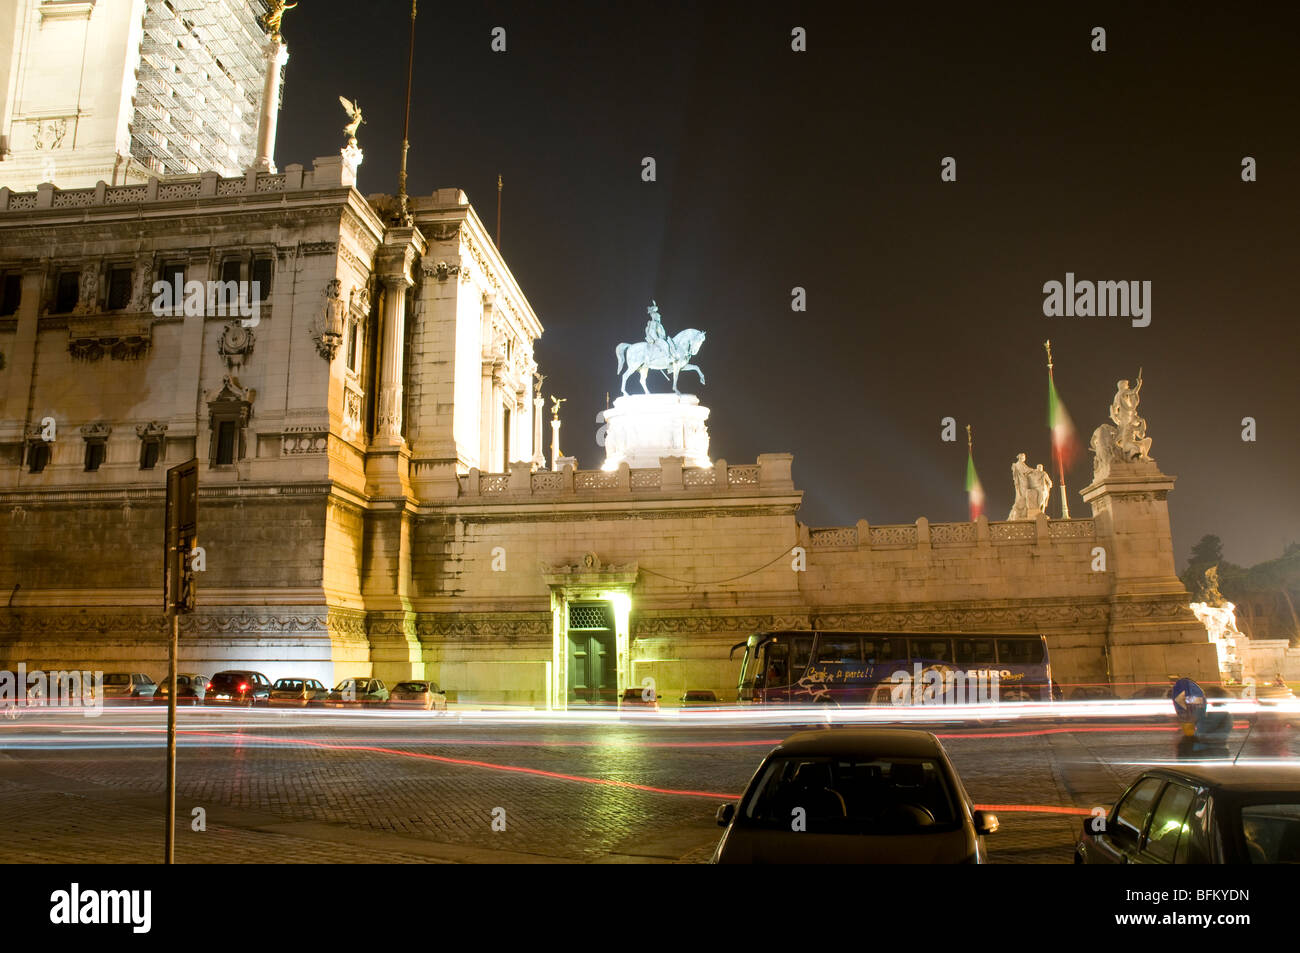 Monumento a Vittorio Emanuele II a Roma. Enorme scultura equestre di Vittorio Emanuele a cavallo Foto Stock